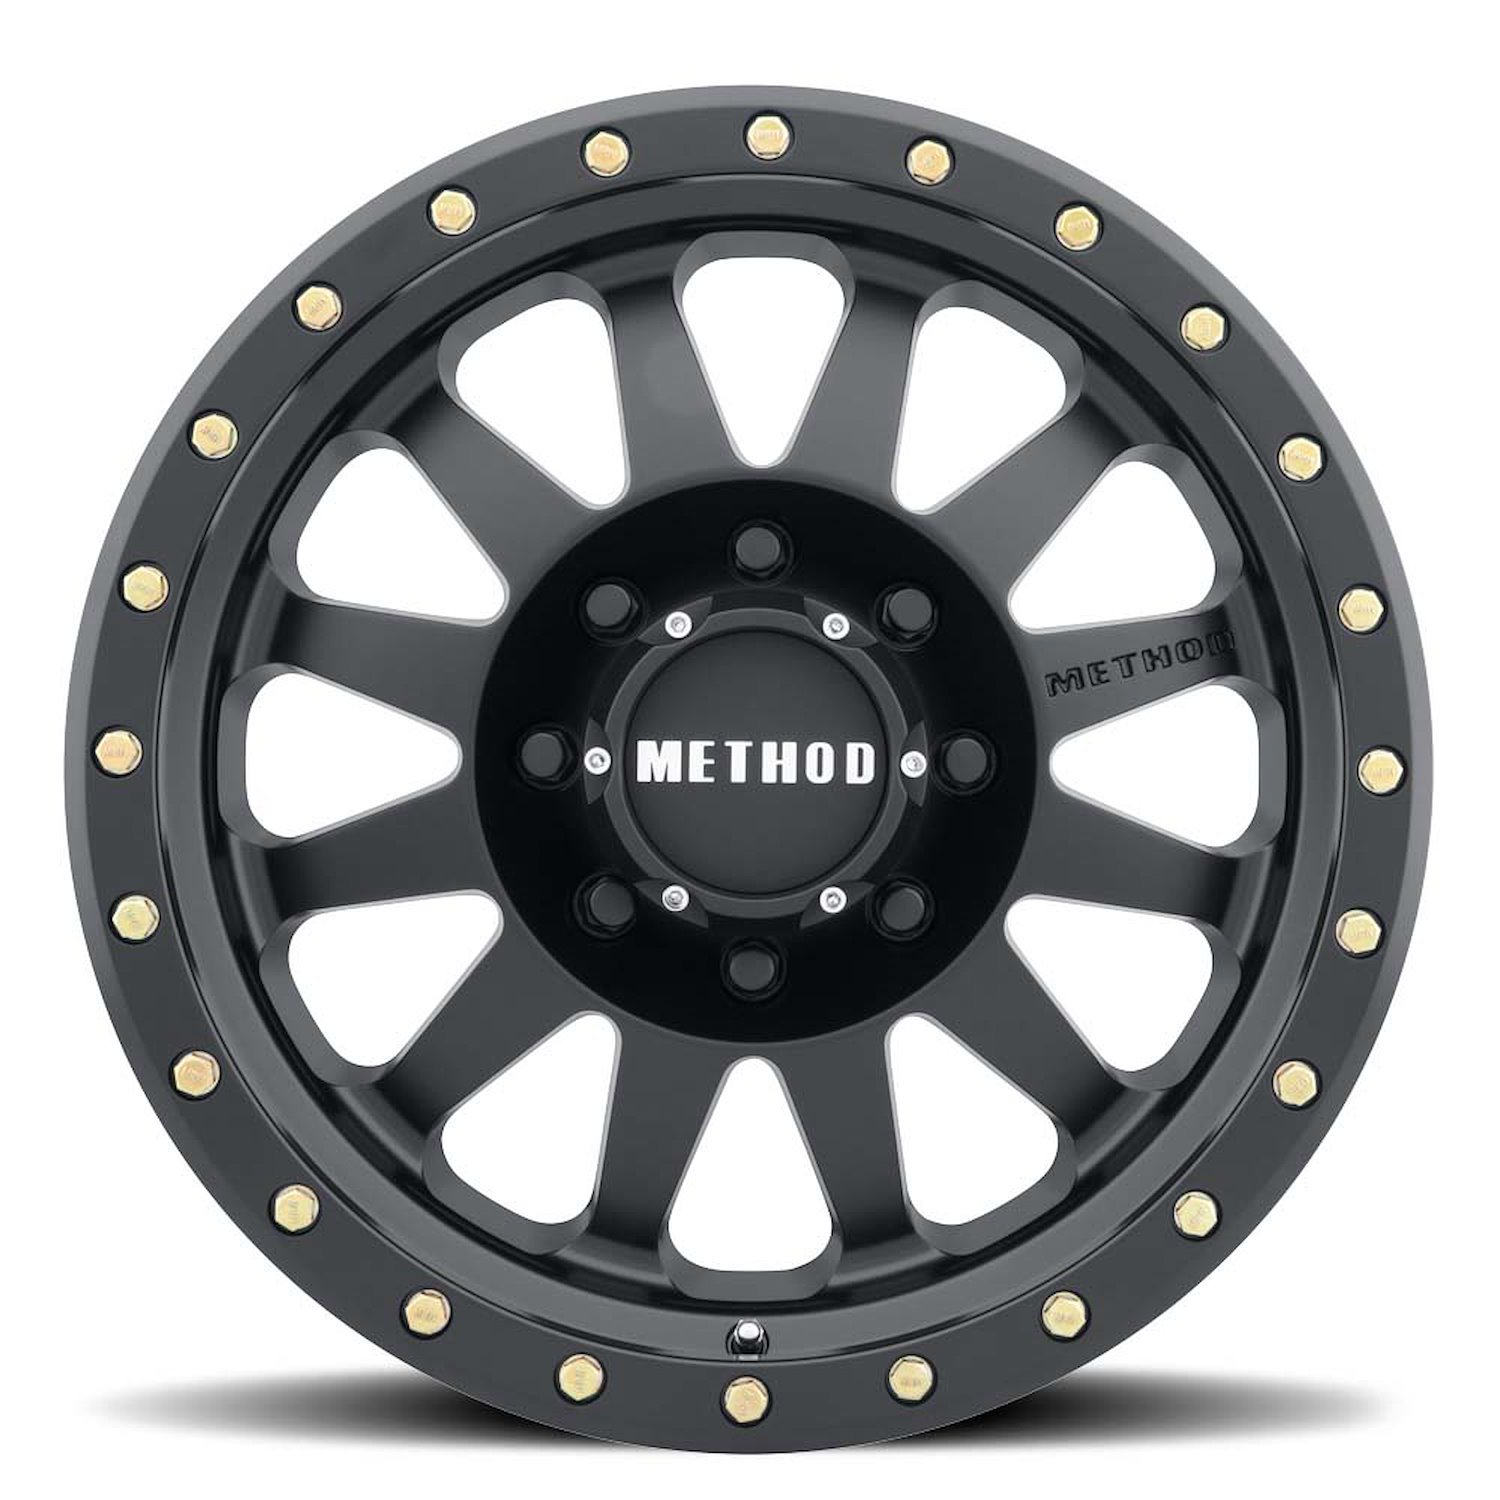 MR30468080500 STREET MR304 Double Standard Wheel [Size: 16" x 8"] Matte Black